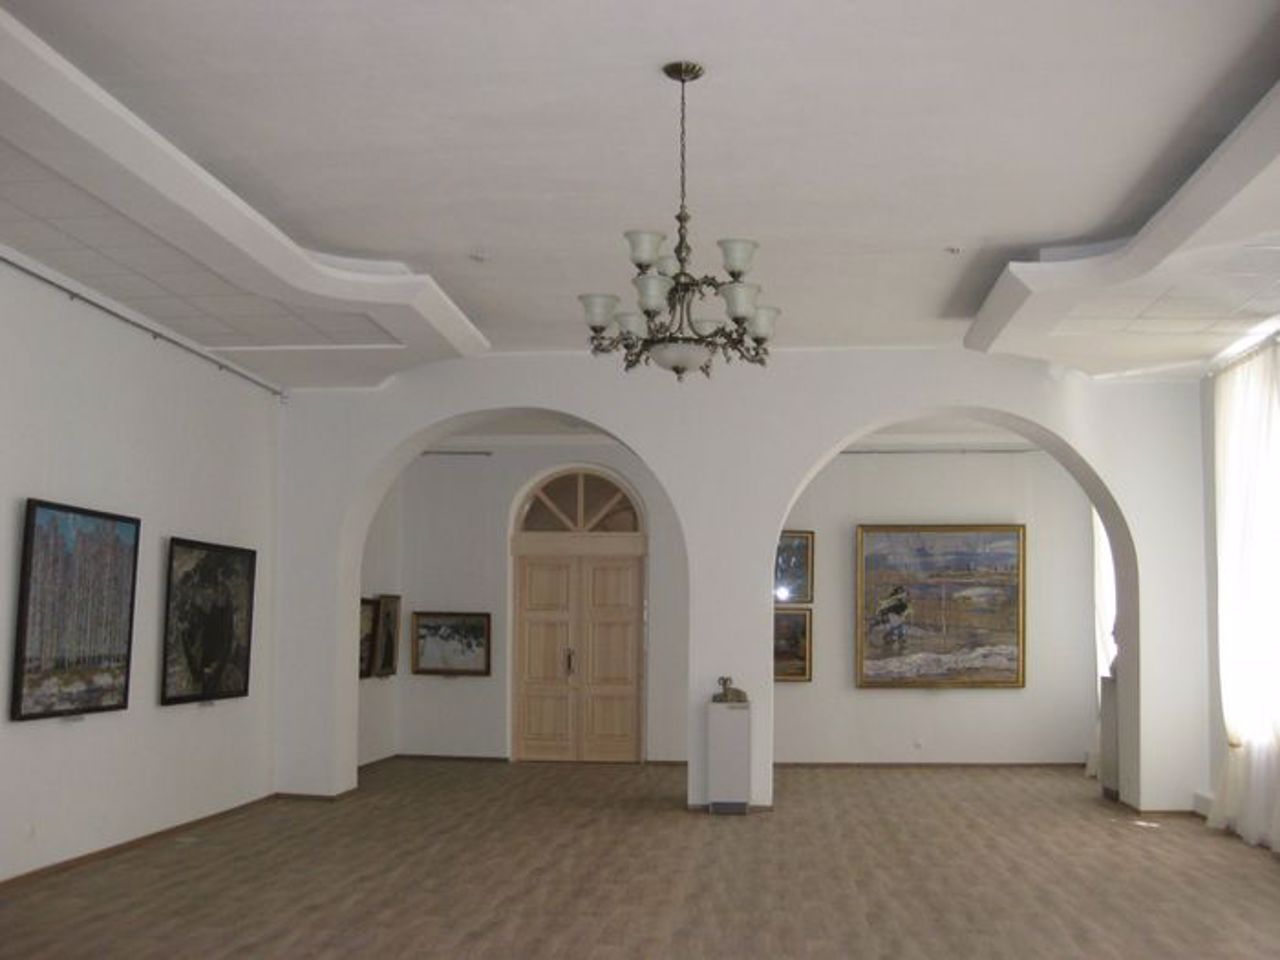 Штаб військових поселень (Художня галерея), Чугуїв